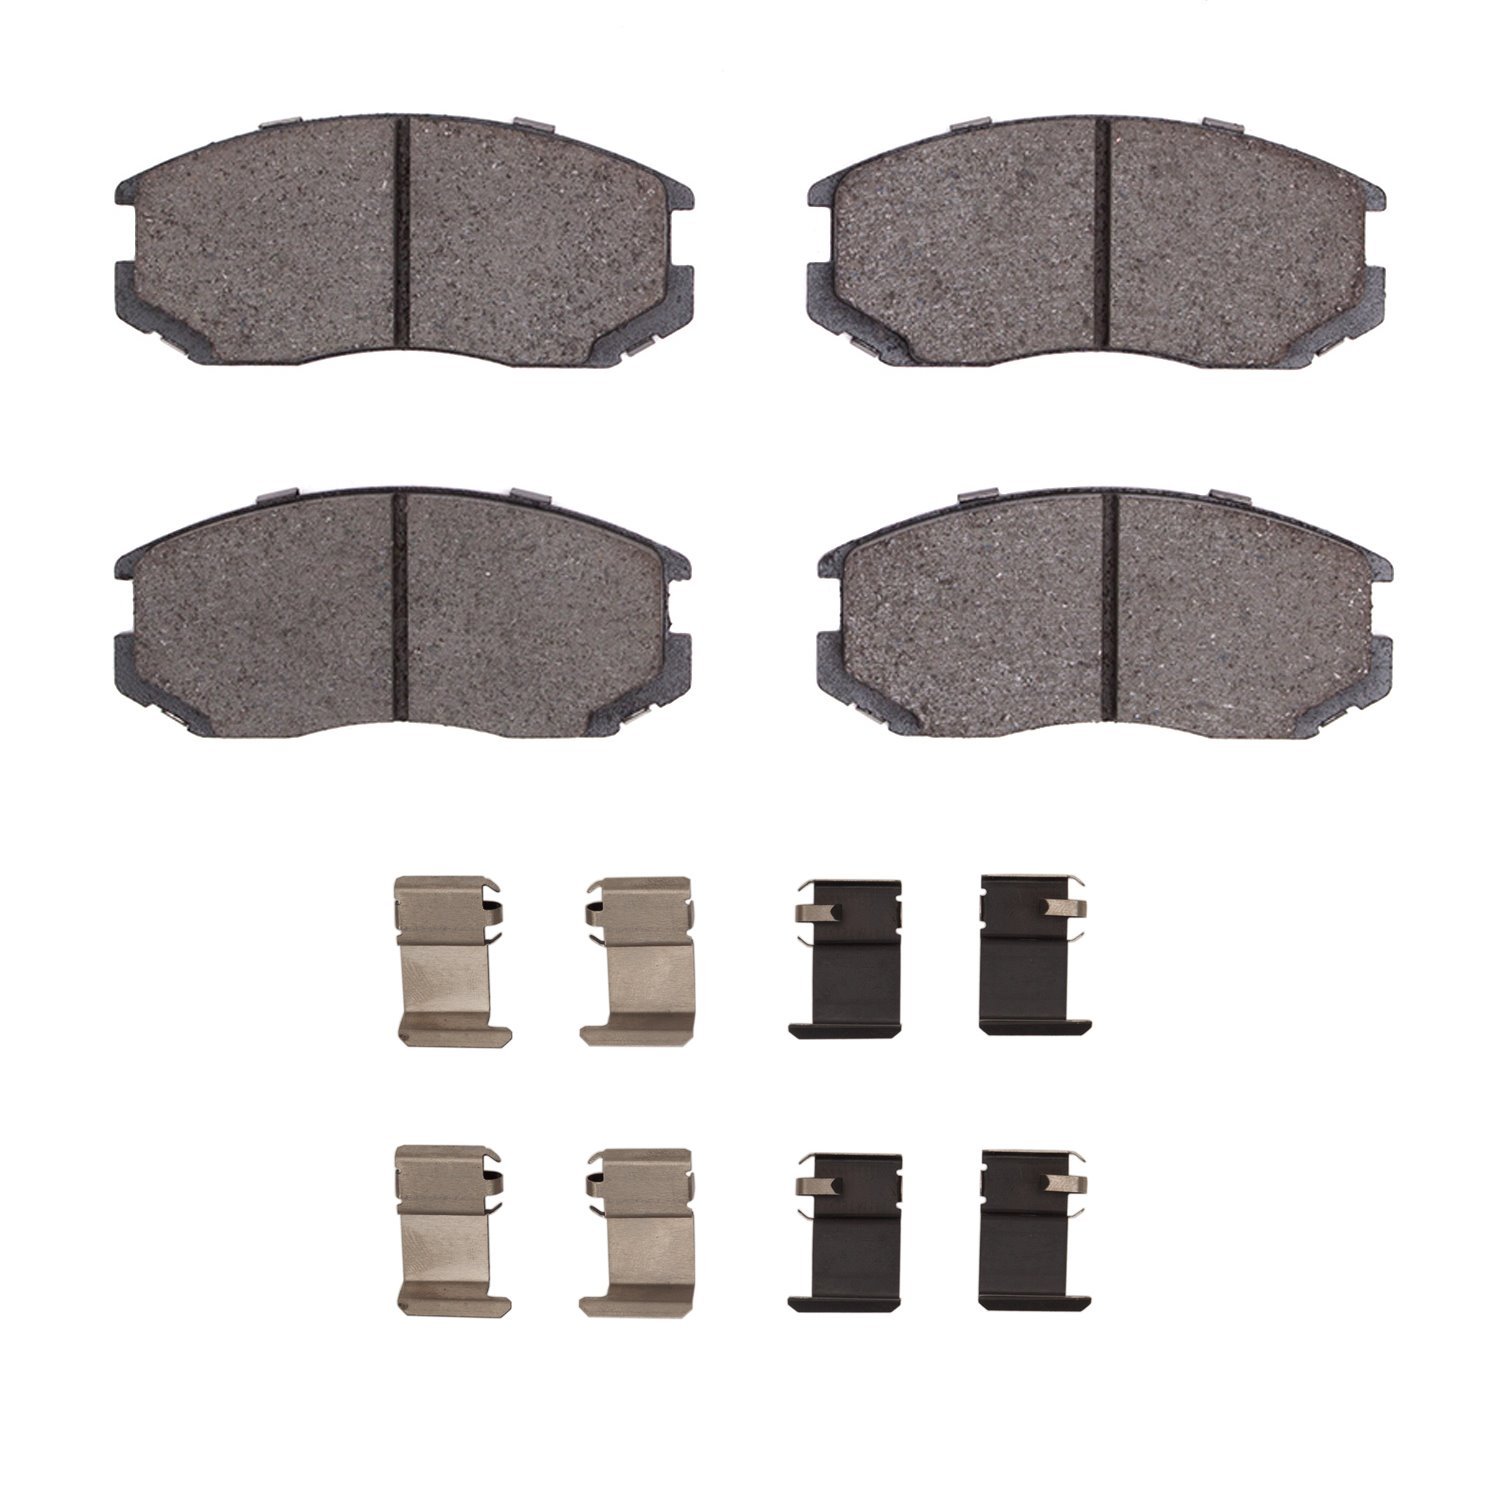 Ceramic Brake Pads & Hardware Kit, 1991-2000 Fits Multiple Makes/Models, Position: Front